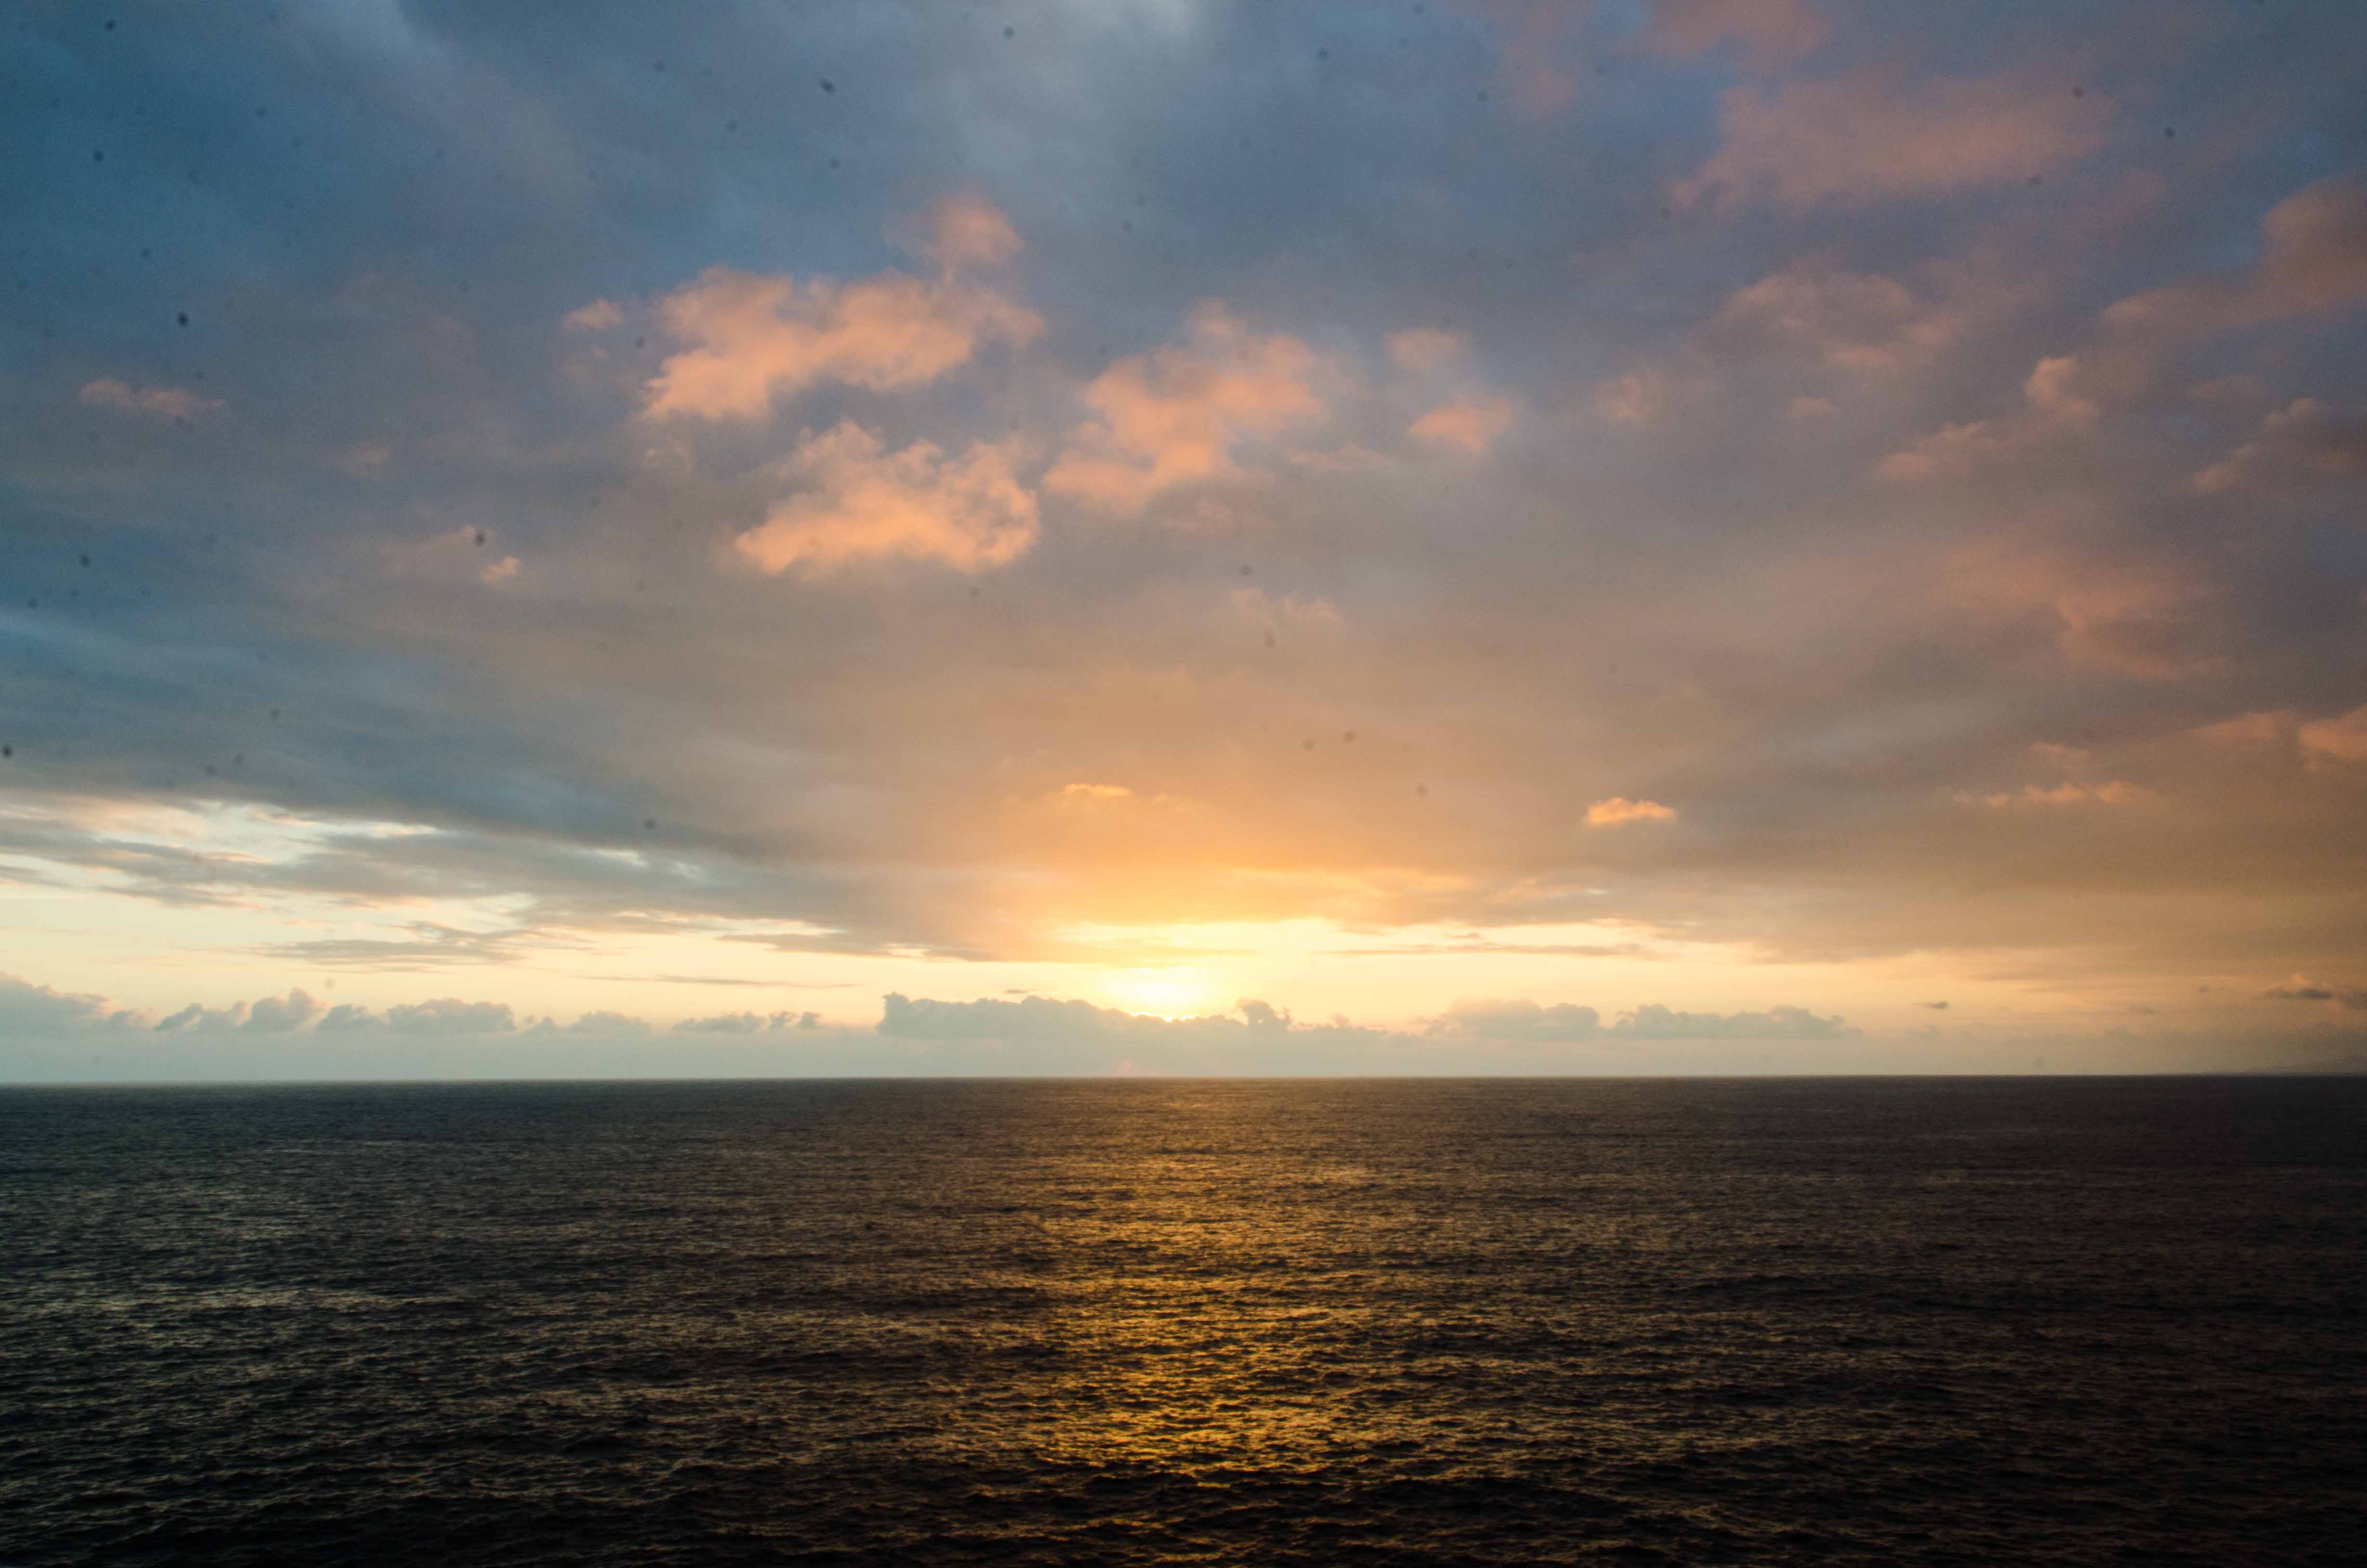 Sunset from the Sinfonia de Mar